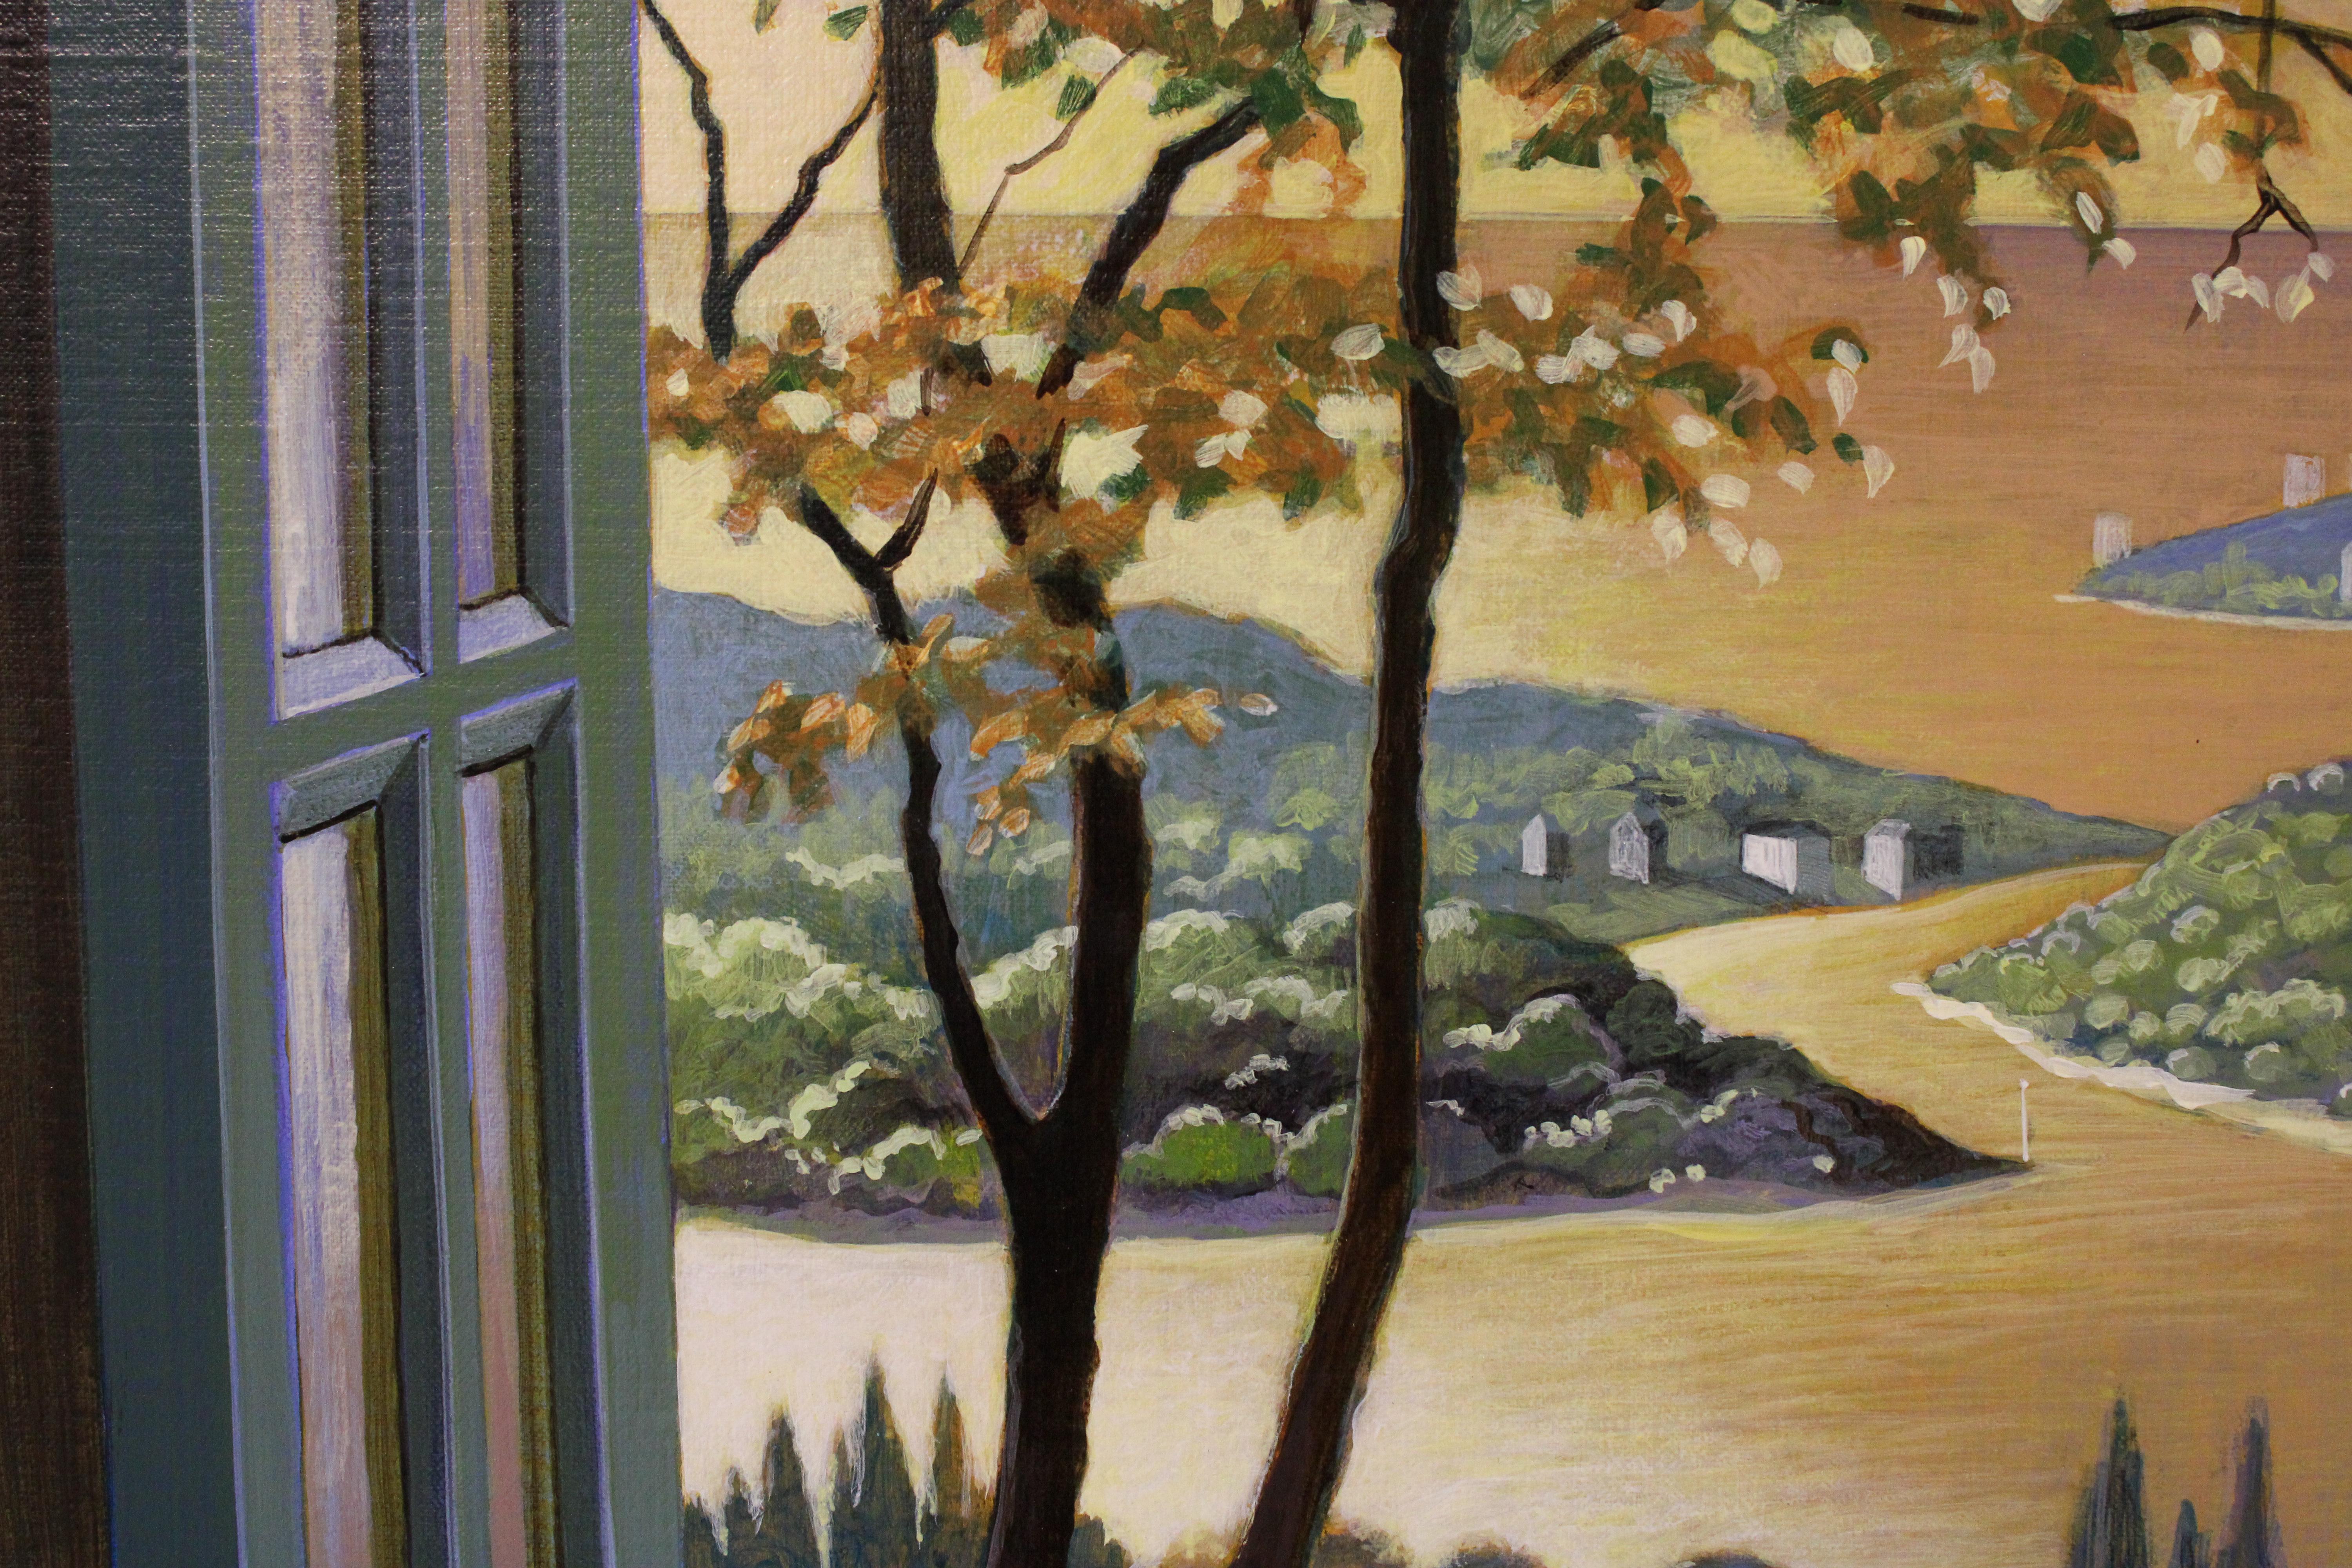 La fenêtre de ma chambre - Peinture à l'huile contemporaine du 21e siècle de Michiel Schrijver 2